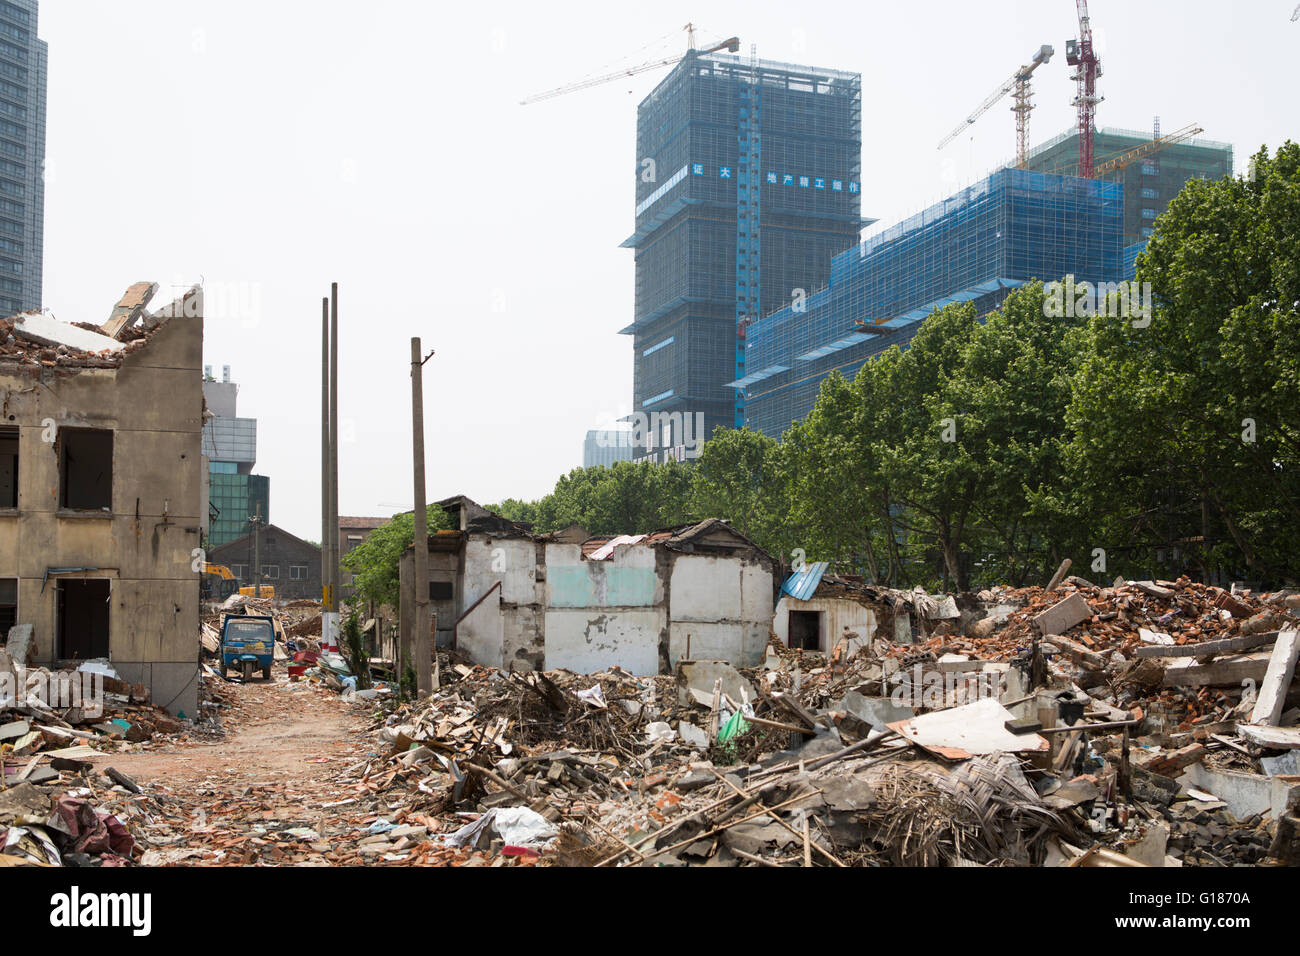 Chinois avec des débris des maisons démolies sur le terrain, pour l'urbanisation, de l'activité nouveau bâtiment nouvelle construction avec grue background Banque D'Images